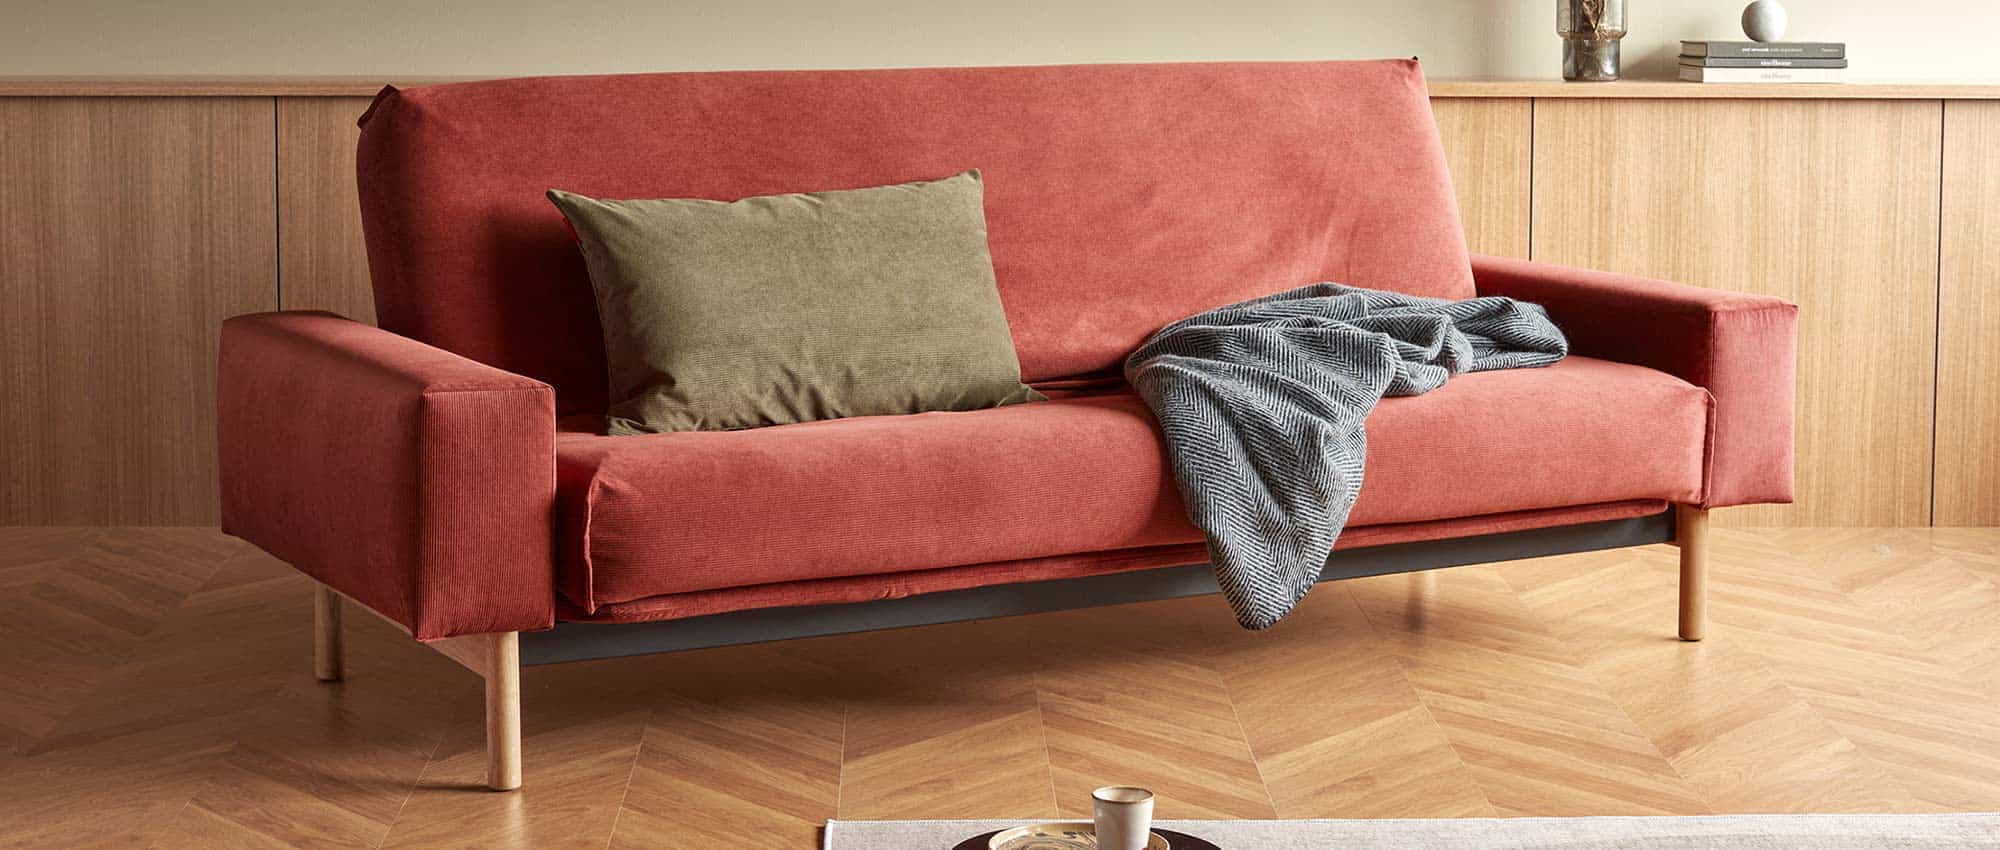 Innovation Schlafsofa MIMER mit Lattenrost und Matratze, Dauerschläfer Sofabett für jeden Tag - Liegefläche 140x200cm